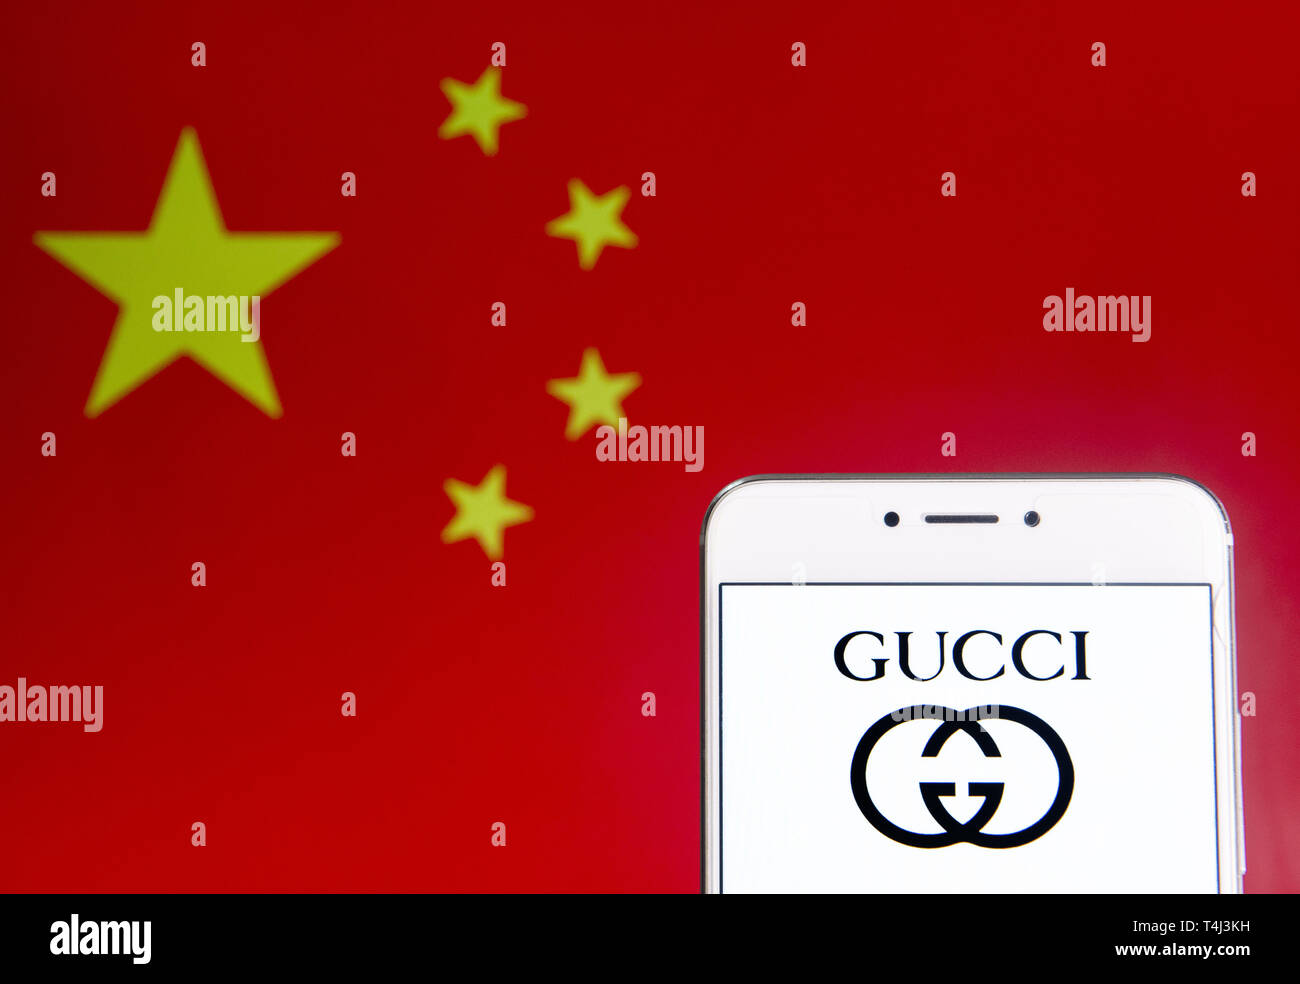 6 avril 2019 - Hong Kong - Sur cette photo, l'illustration d'une marque de  mode de luxe italien logo Gucci est vu sur un appareil mobile Android avec  la République populaire de